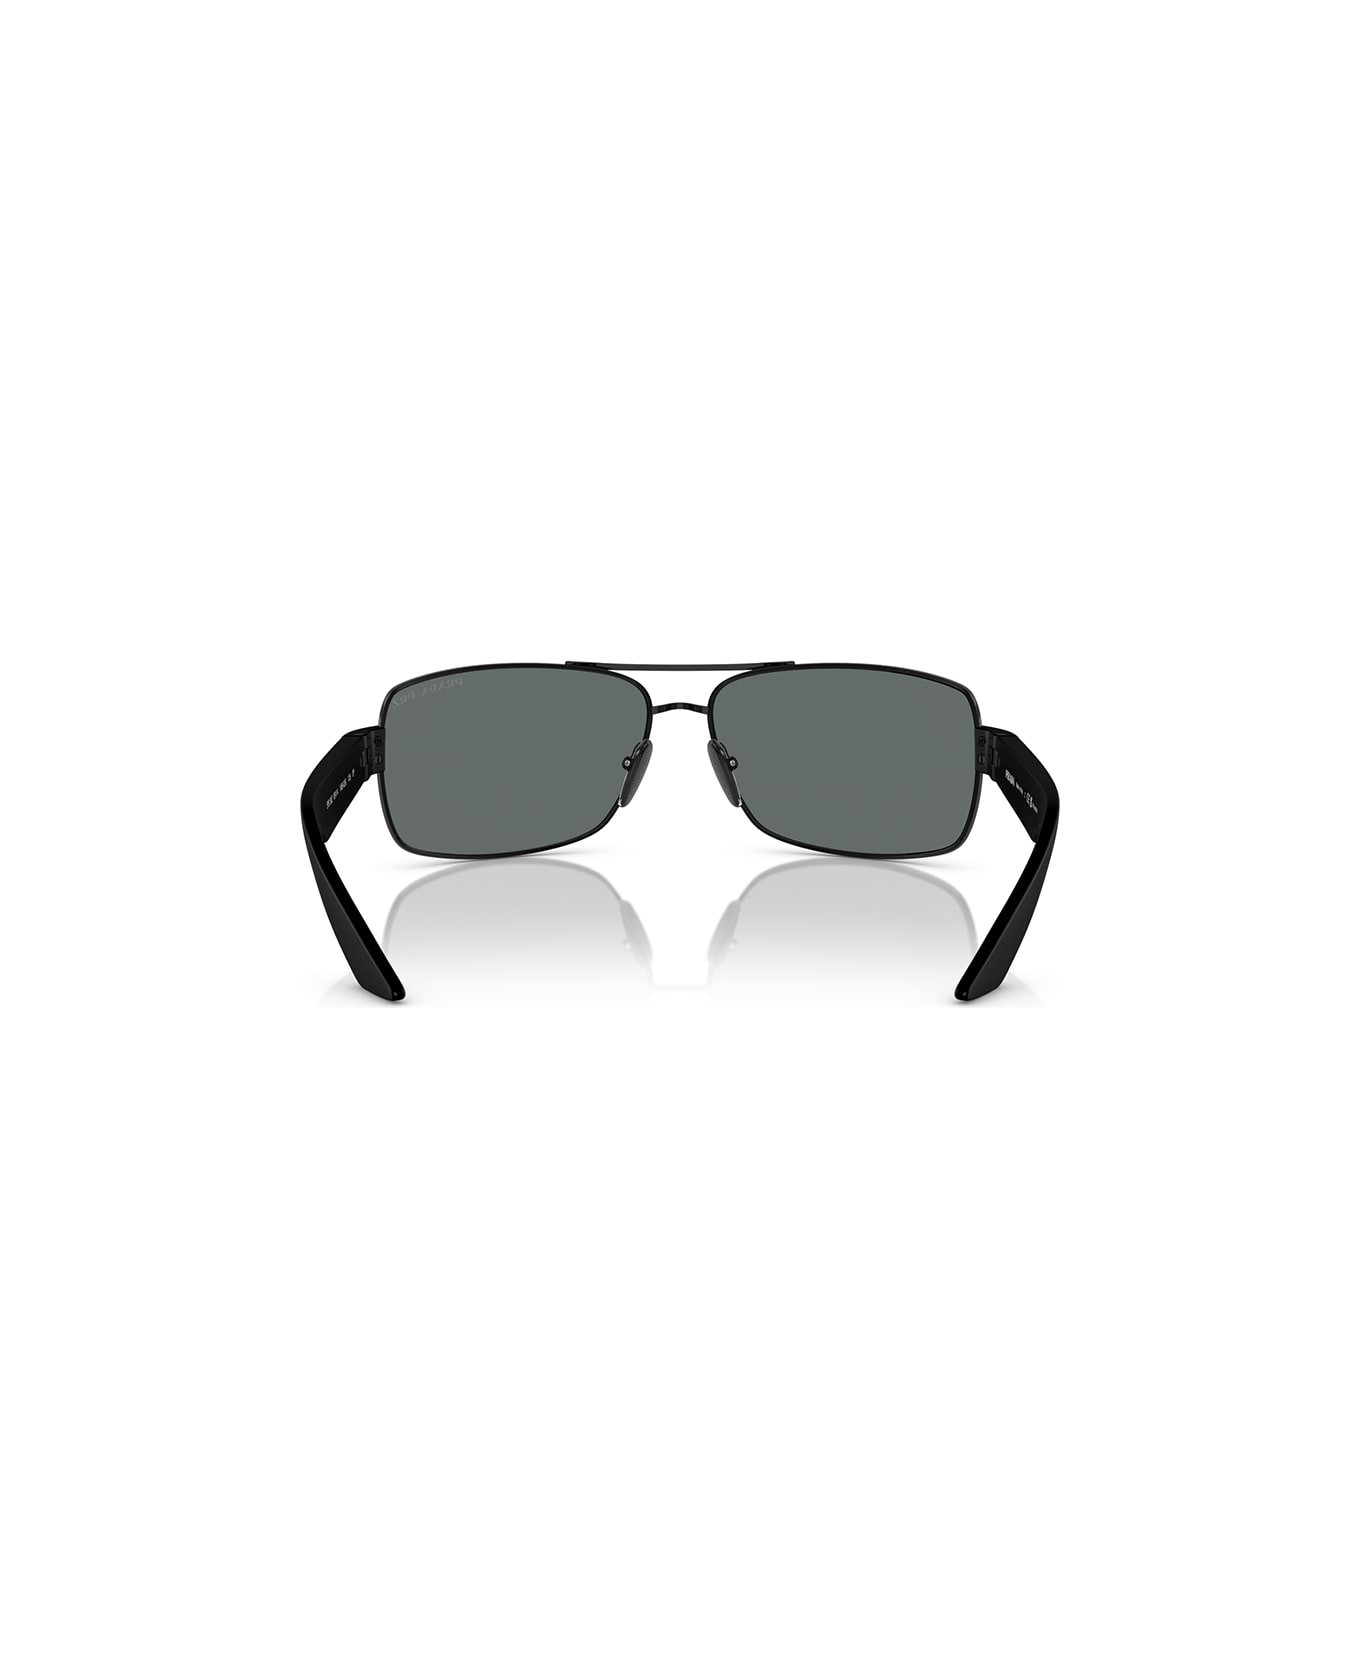 Prada Linea Rossa Sunglasses - Nero/Grigio